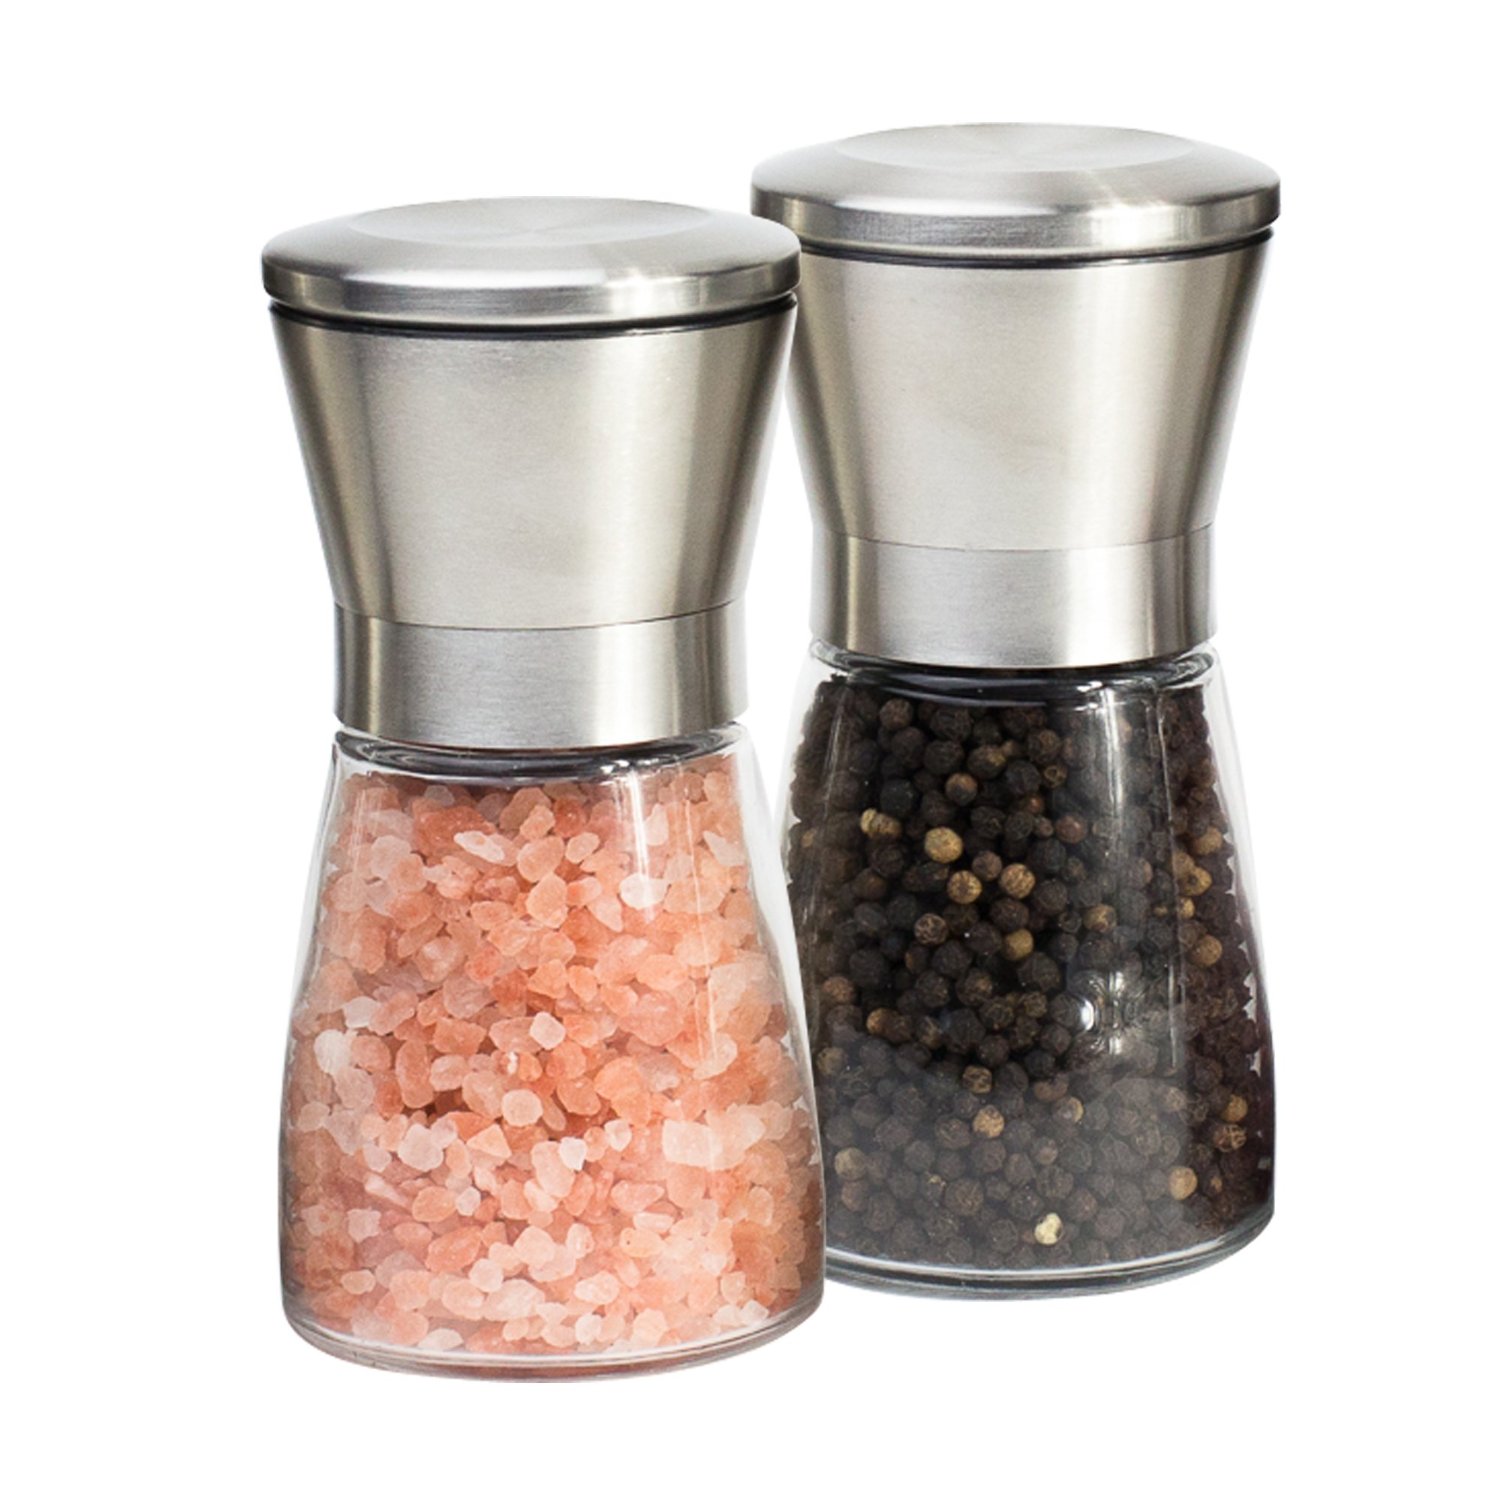 Salt And Pepper Grinder Set Best Home Products